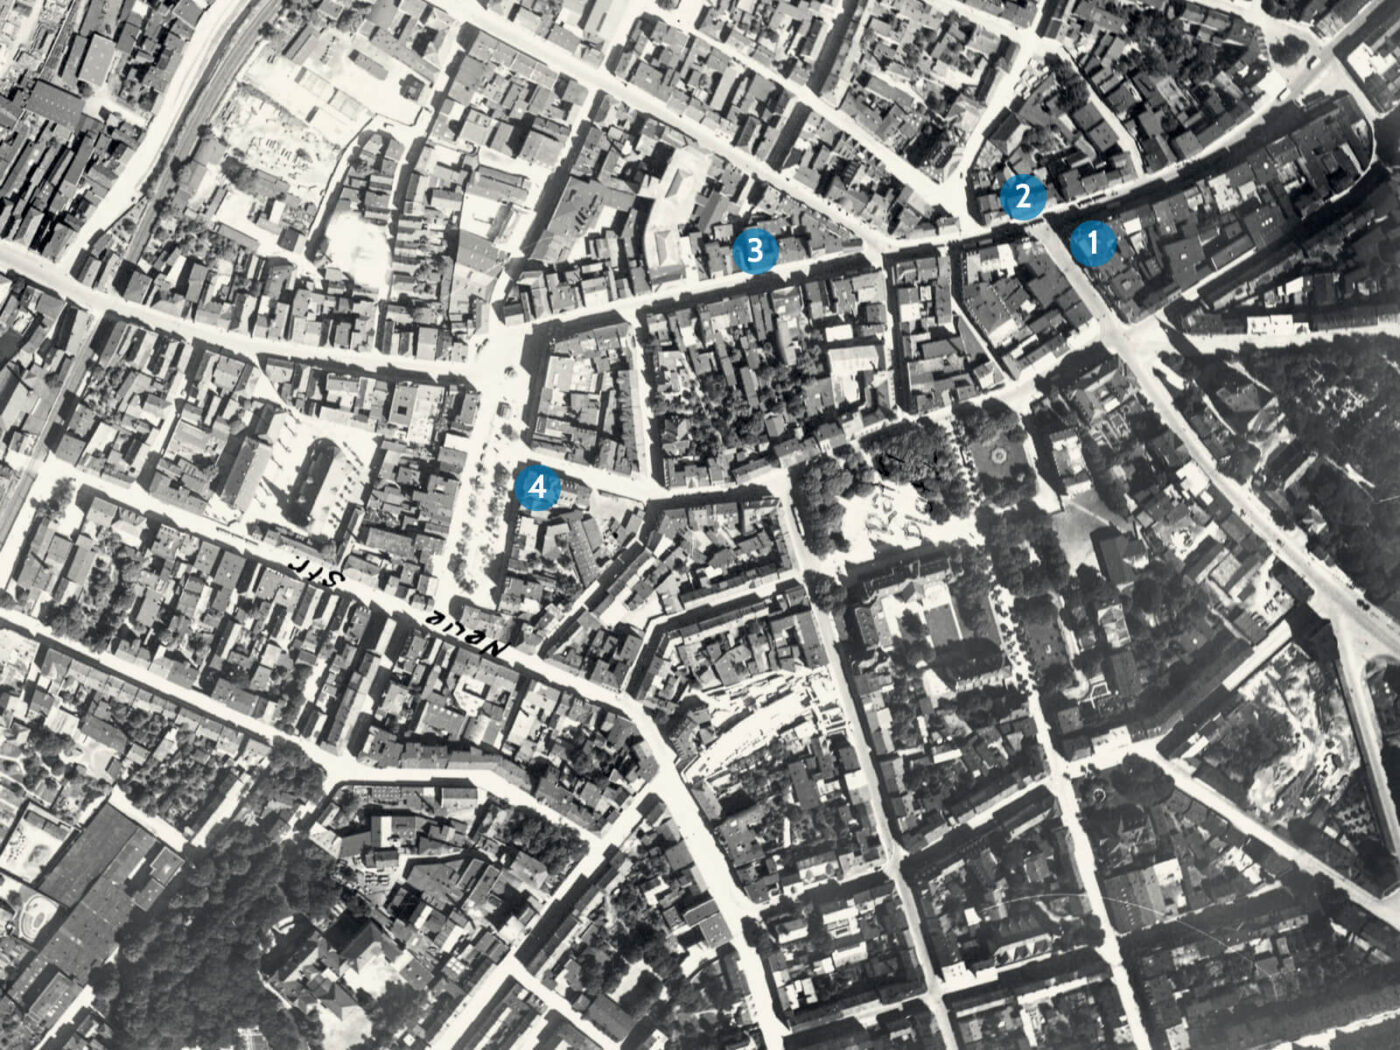 Luftbild der Harburger Innenstadt 1929 mit Markierungen auf den von Sarne erwähnten Orten